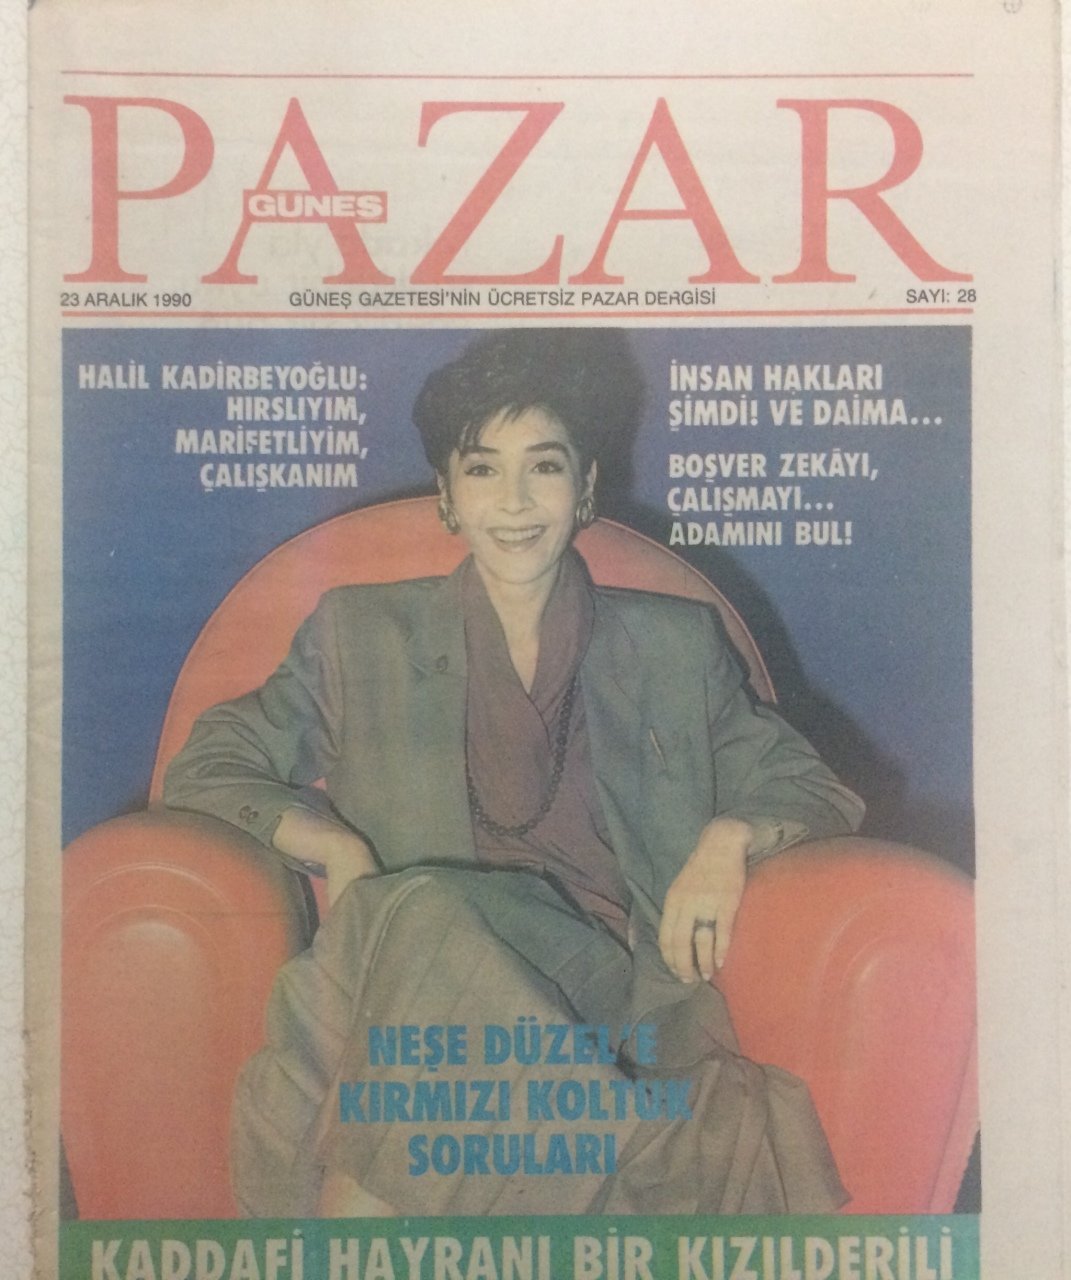 Güneş Gazetesi Pazar Eki 23 Aralık 1990 Neşe Düzel�e Kırmızı Koltuk